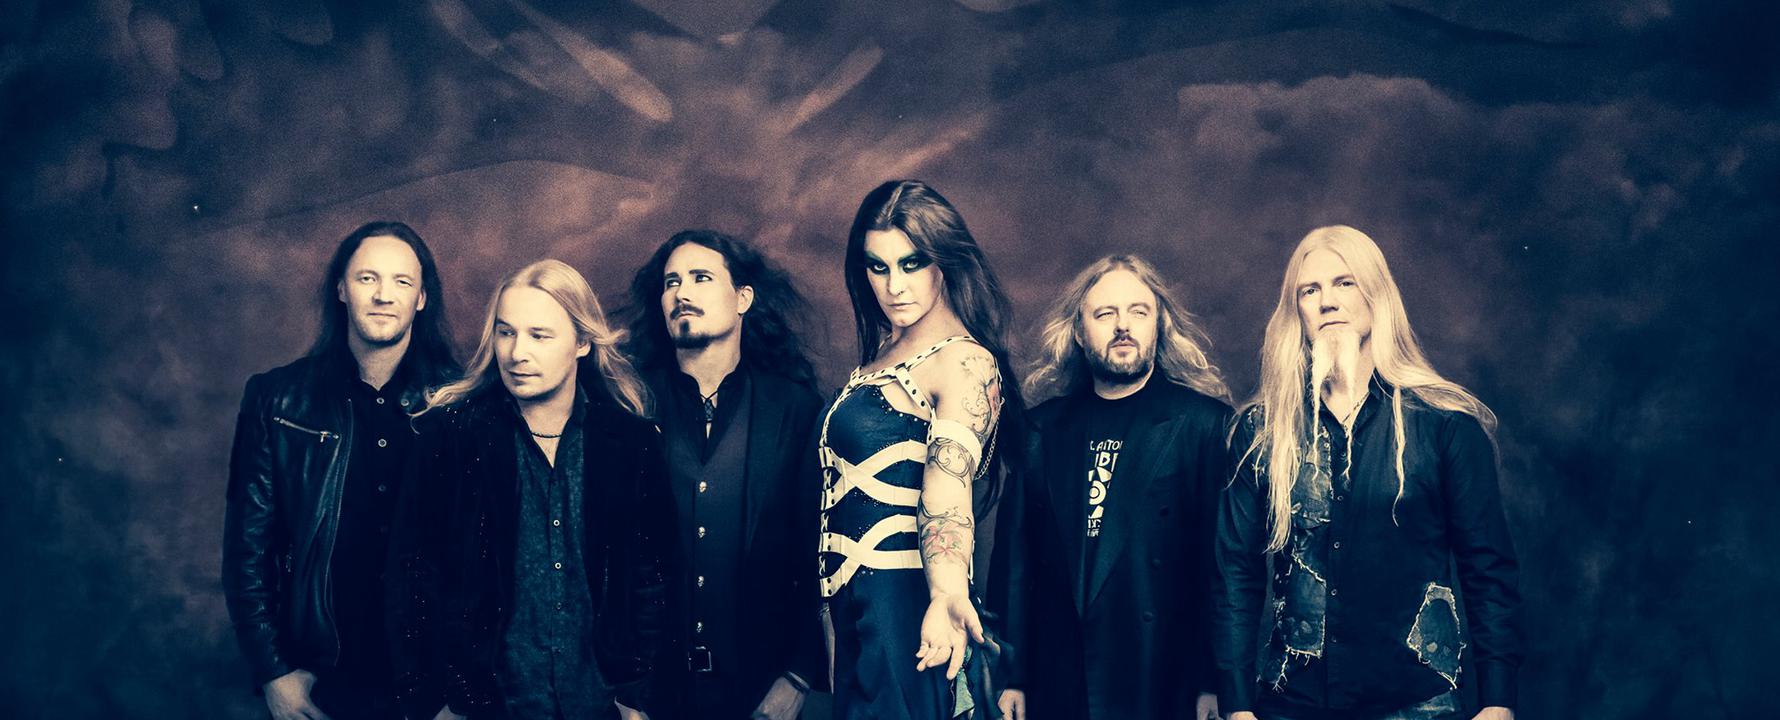 Fotografía promocional de Nightwish